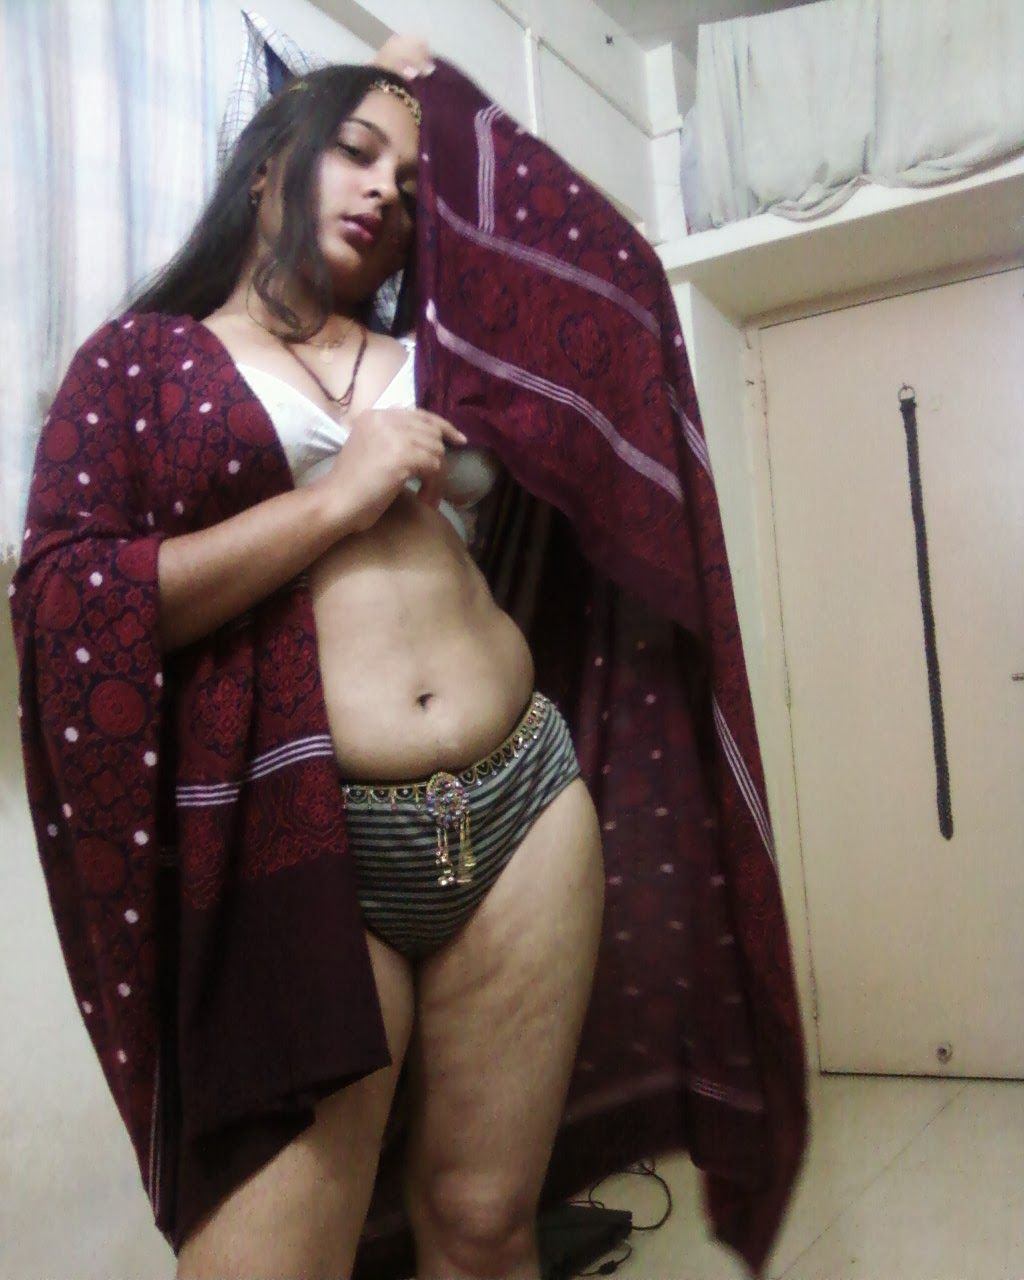 Marwari woman image boobs